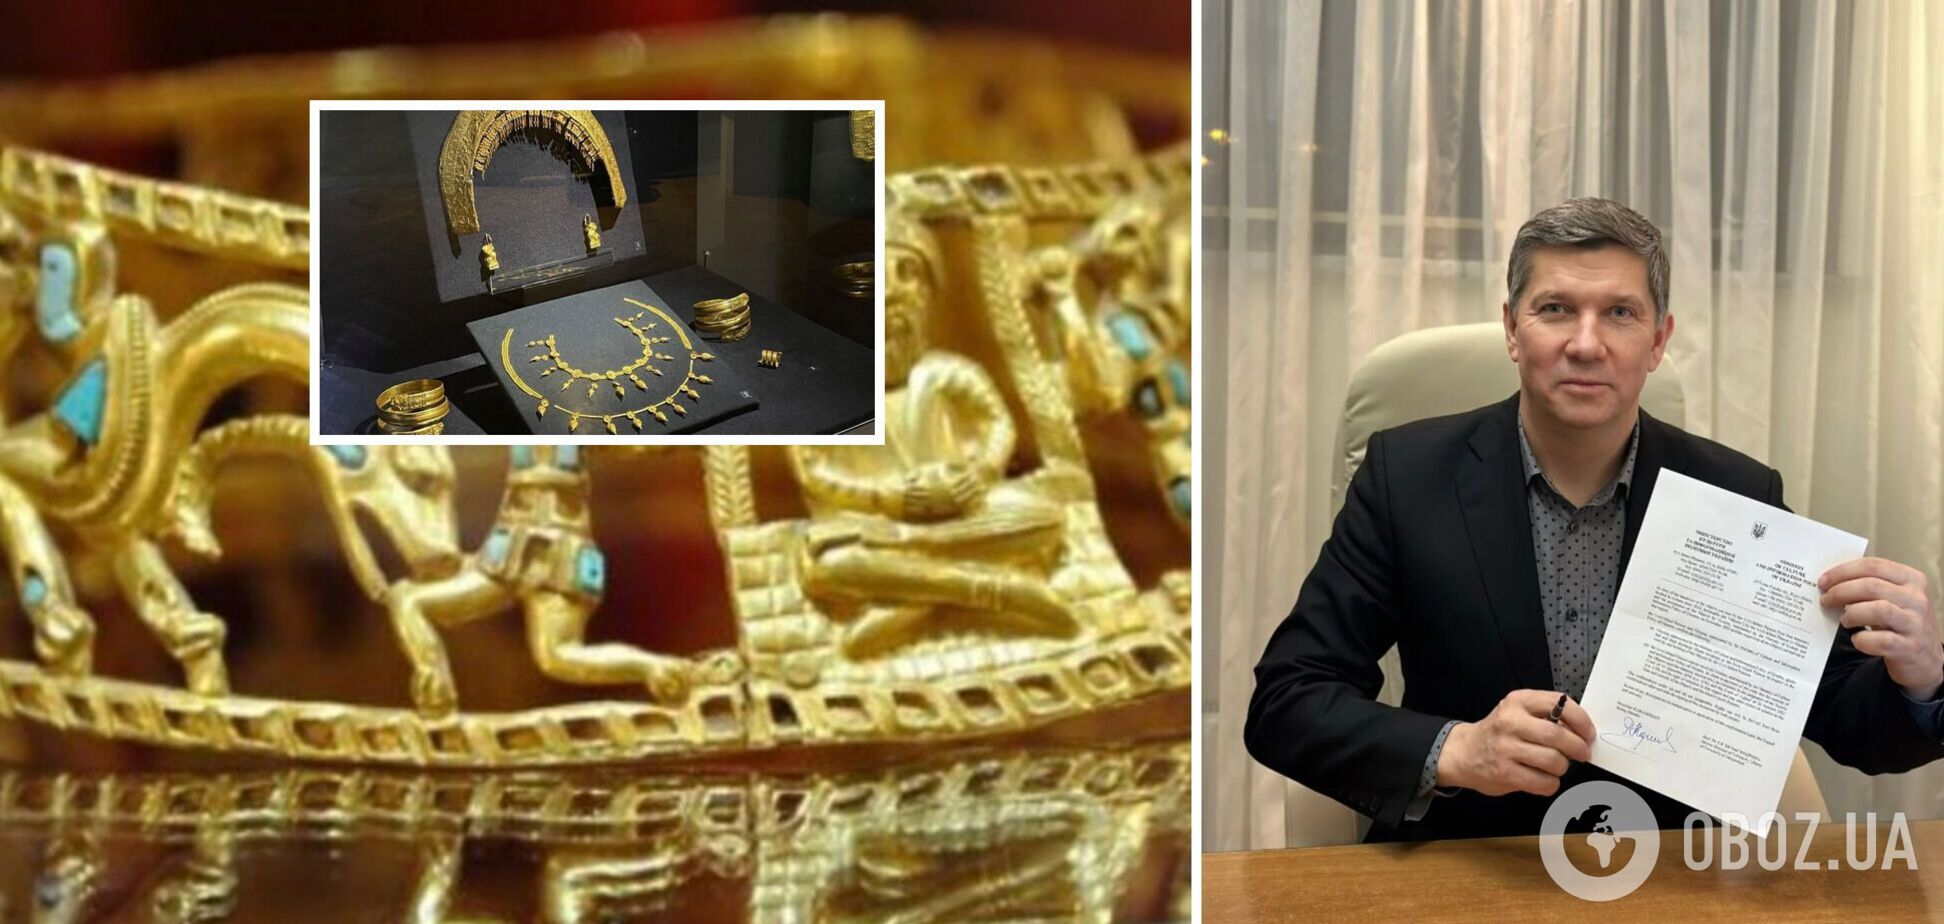 Скифское золото вернется в Украину: какой договоренности удалось достичь и о каких артефактах идет речь. Фото